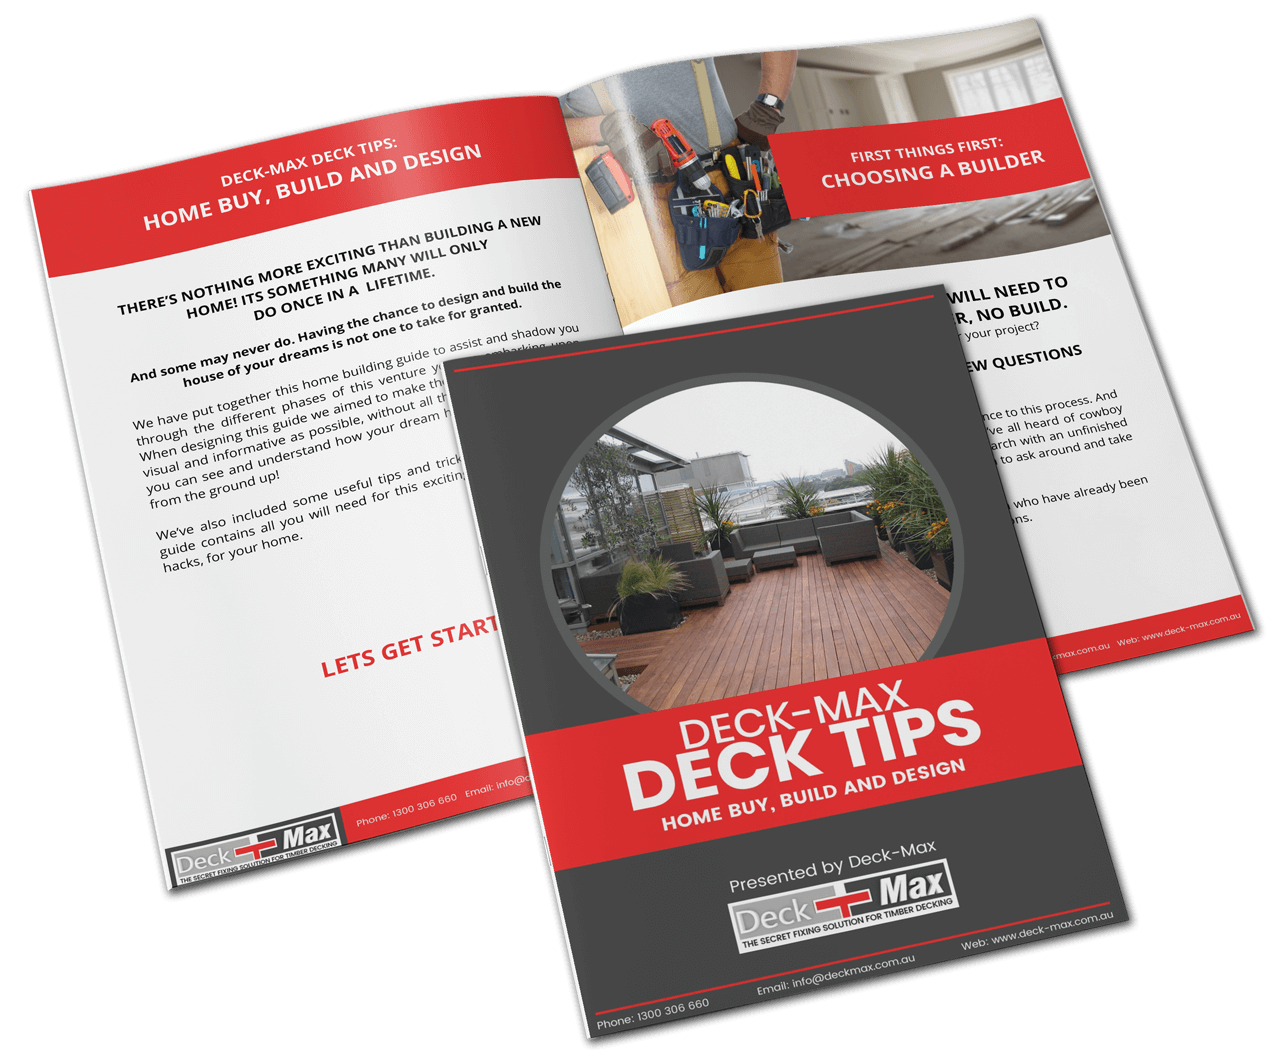 Deck-Max Deck Tips